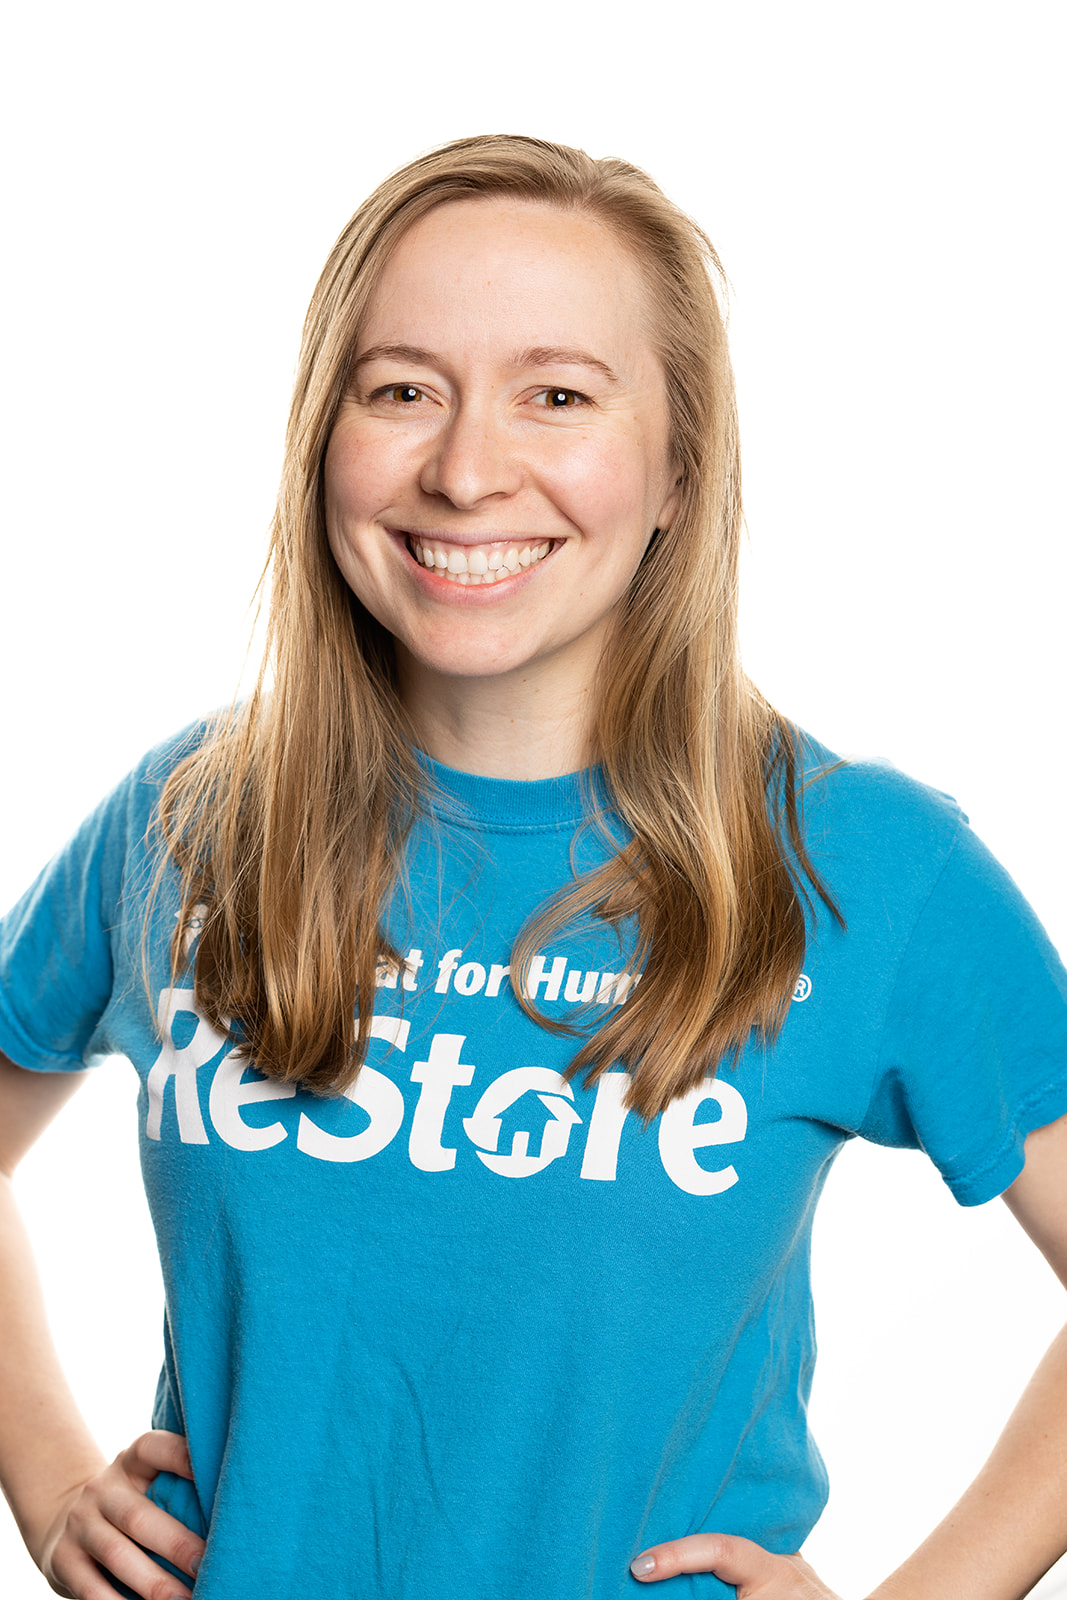 Jocelyn in teal ReStore t-shirt